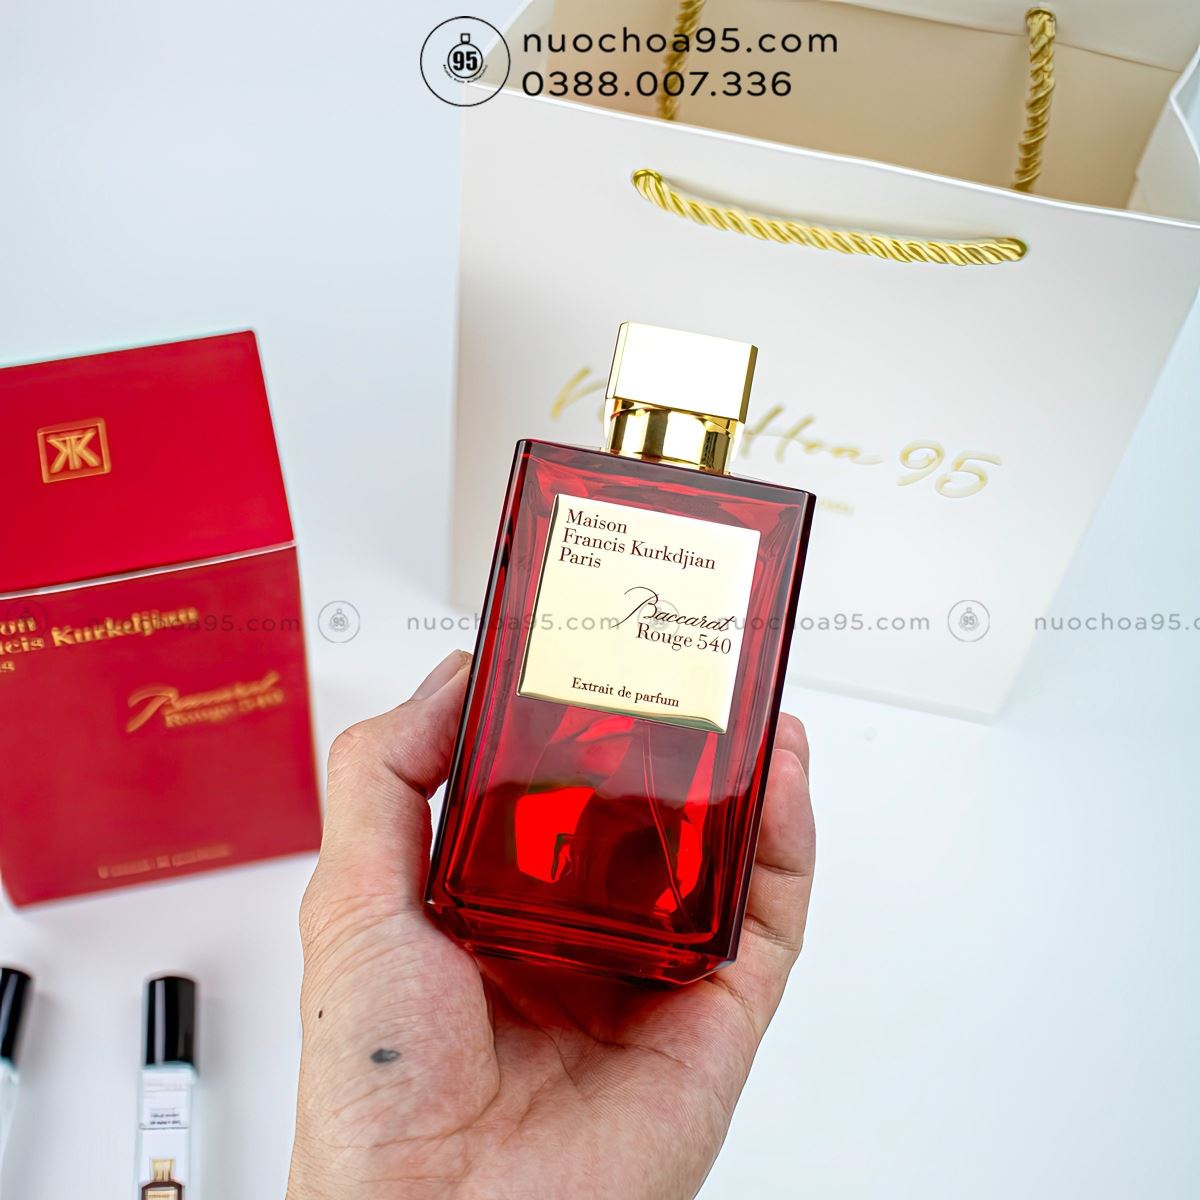 Nước hoa MFK Baccarat Rouge 540 Extrait de Parfum - Ảnh 2